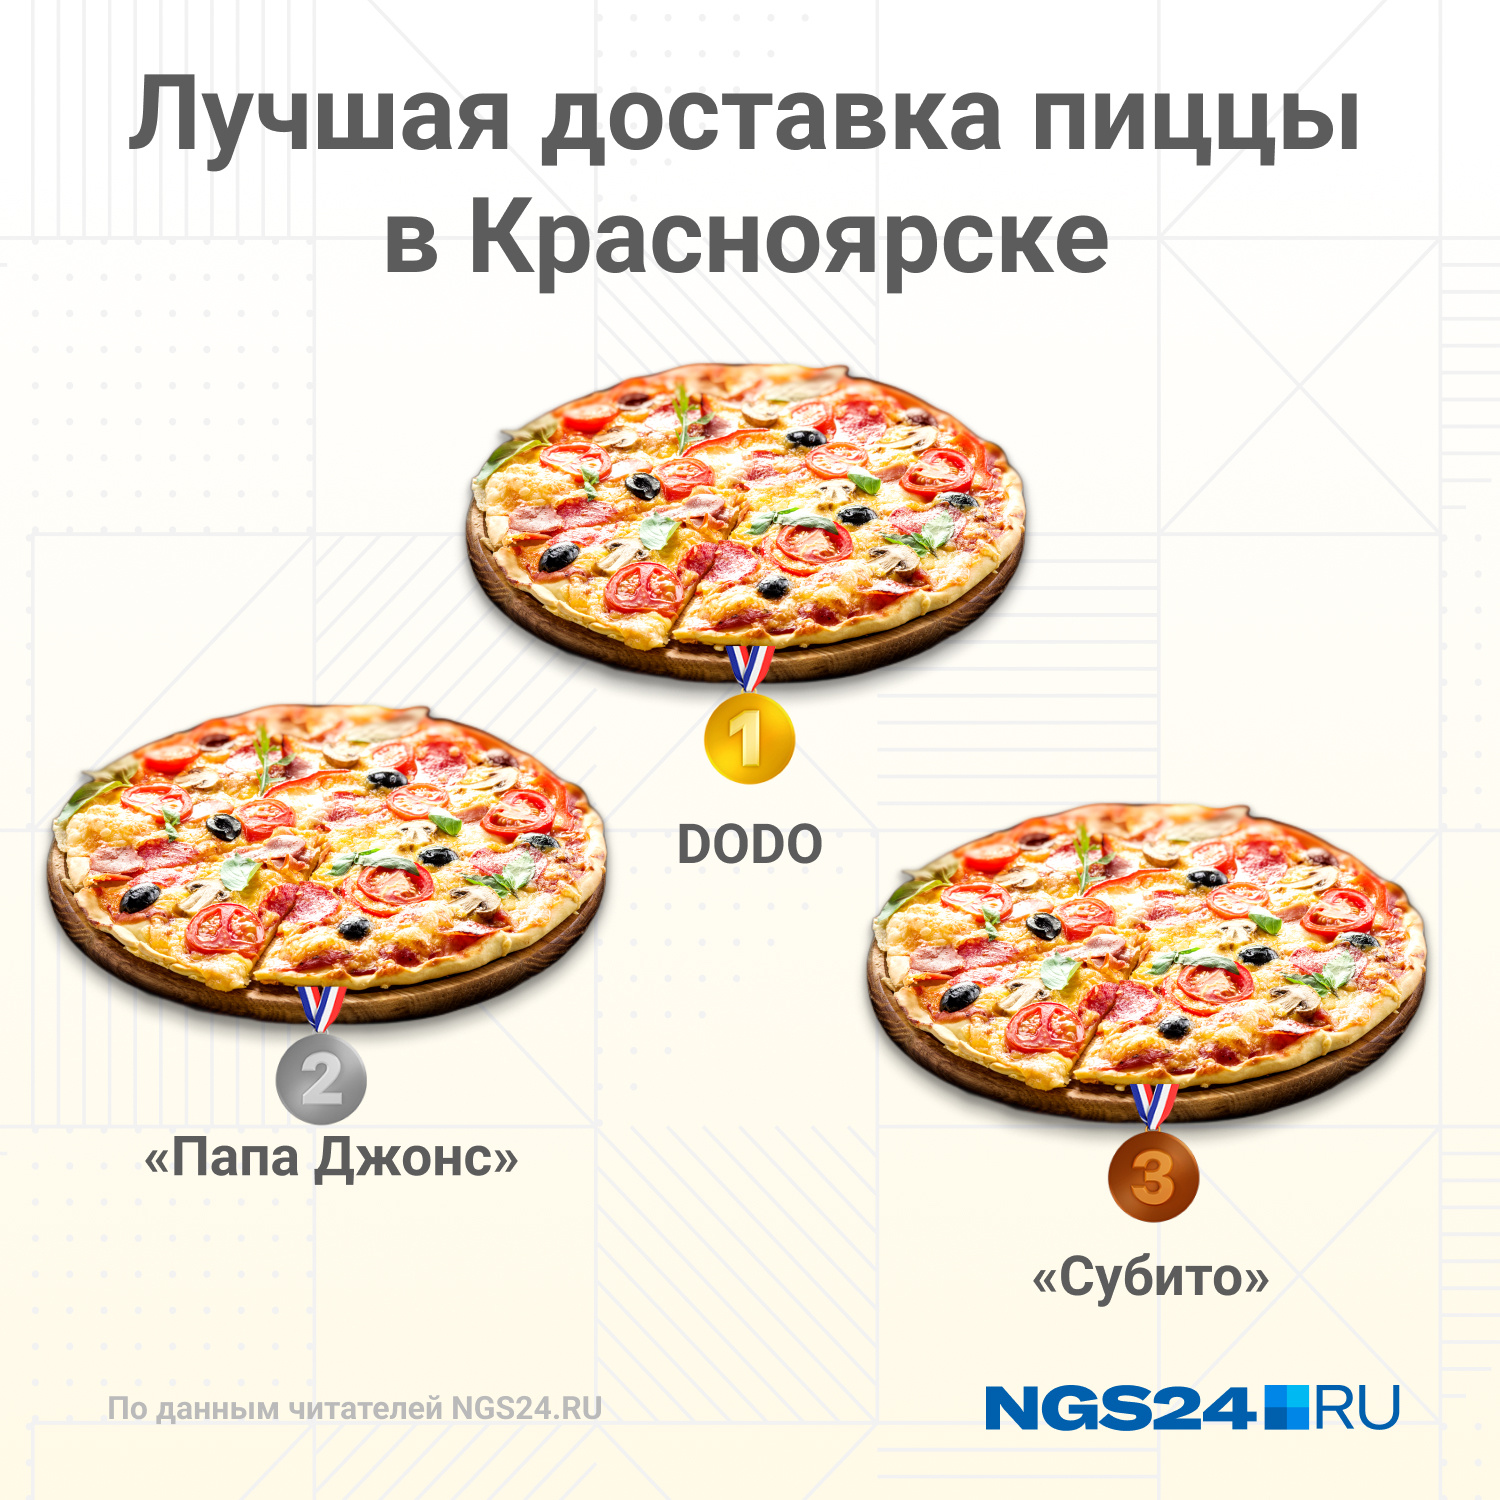 субито пицца красноярск рецепт фото 43